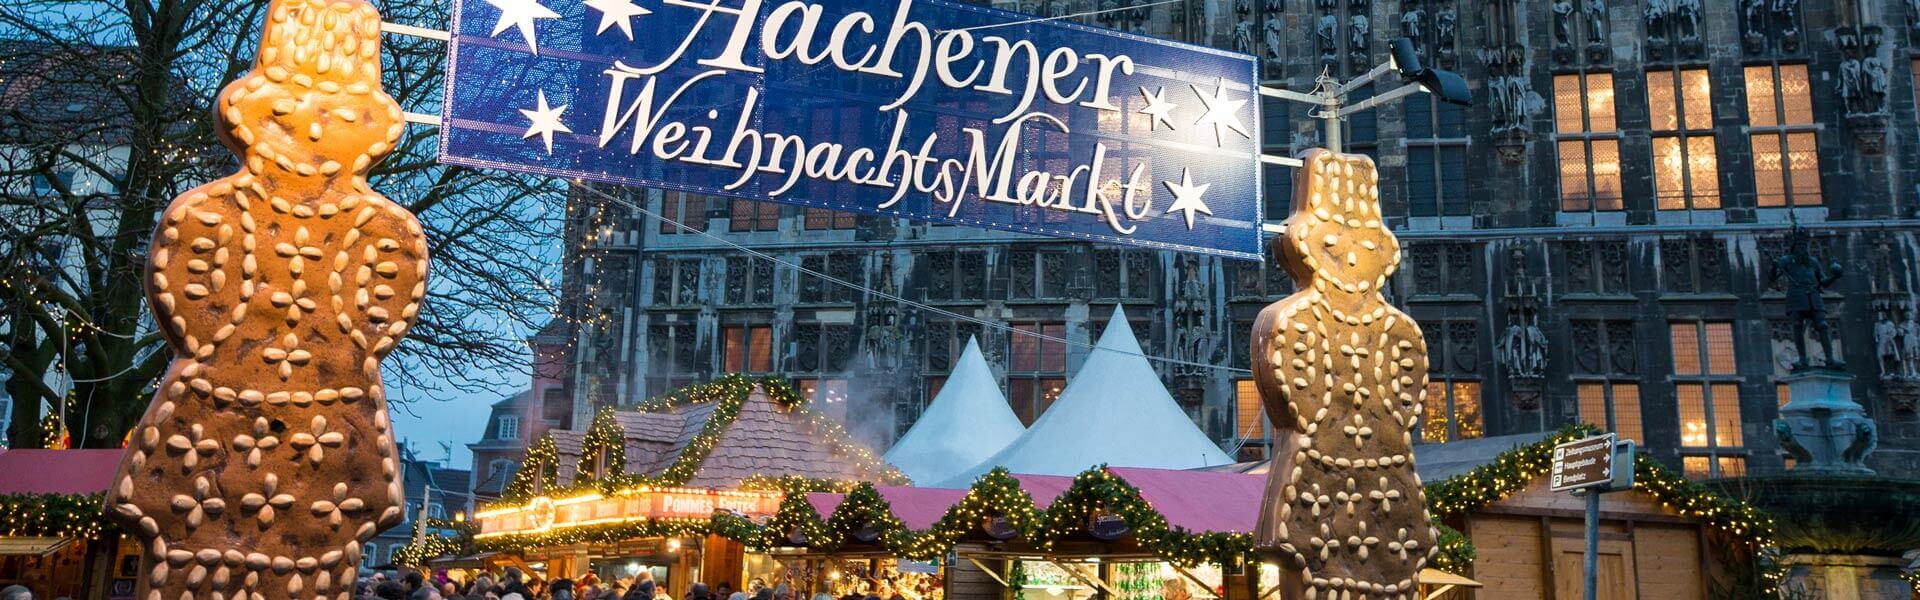 Deutschlandweite Weihnachtsmarkt Tour XXL als outdoor Weihnachtsfeier mit b-ceed events